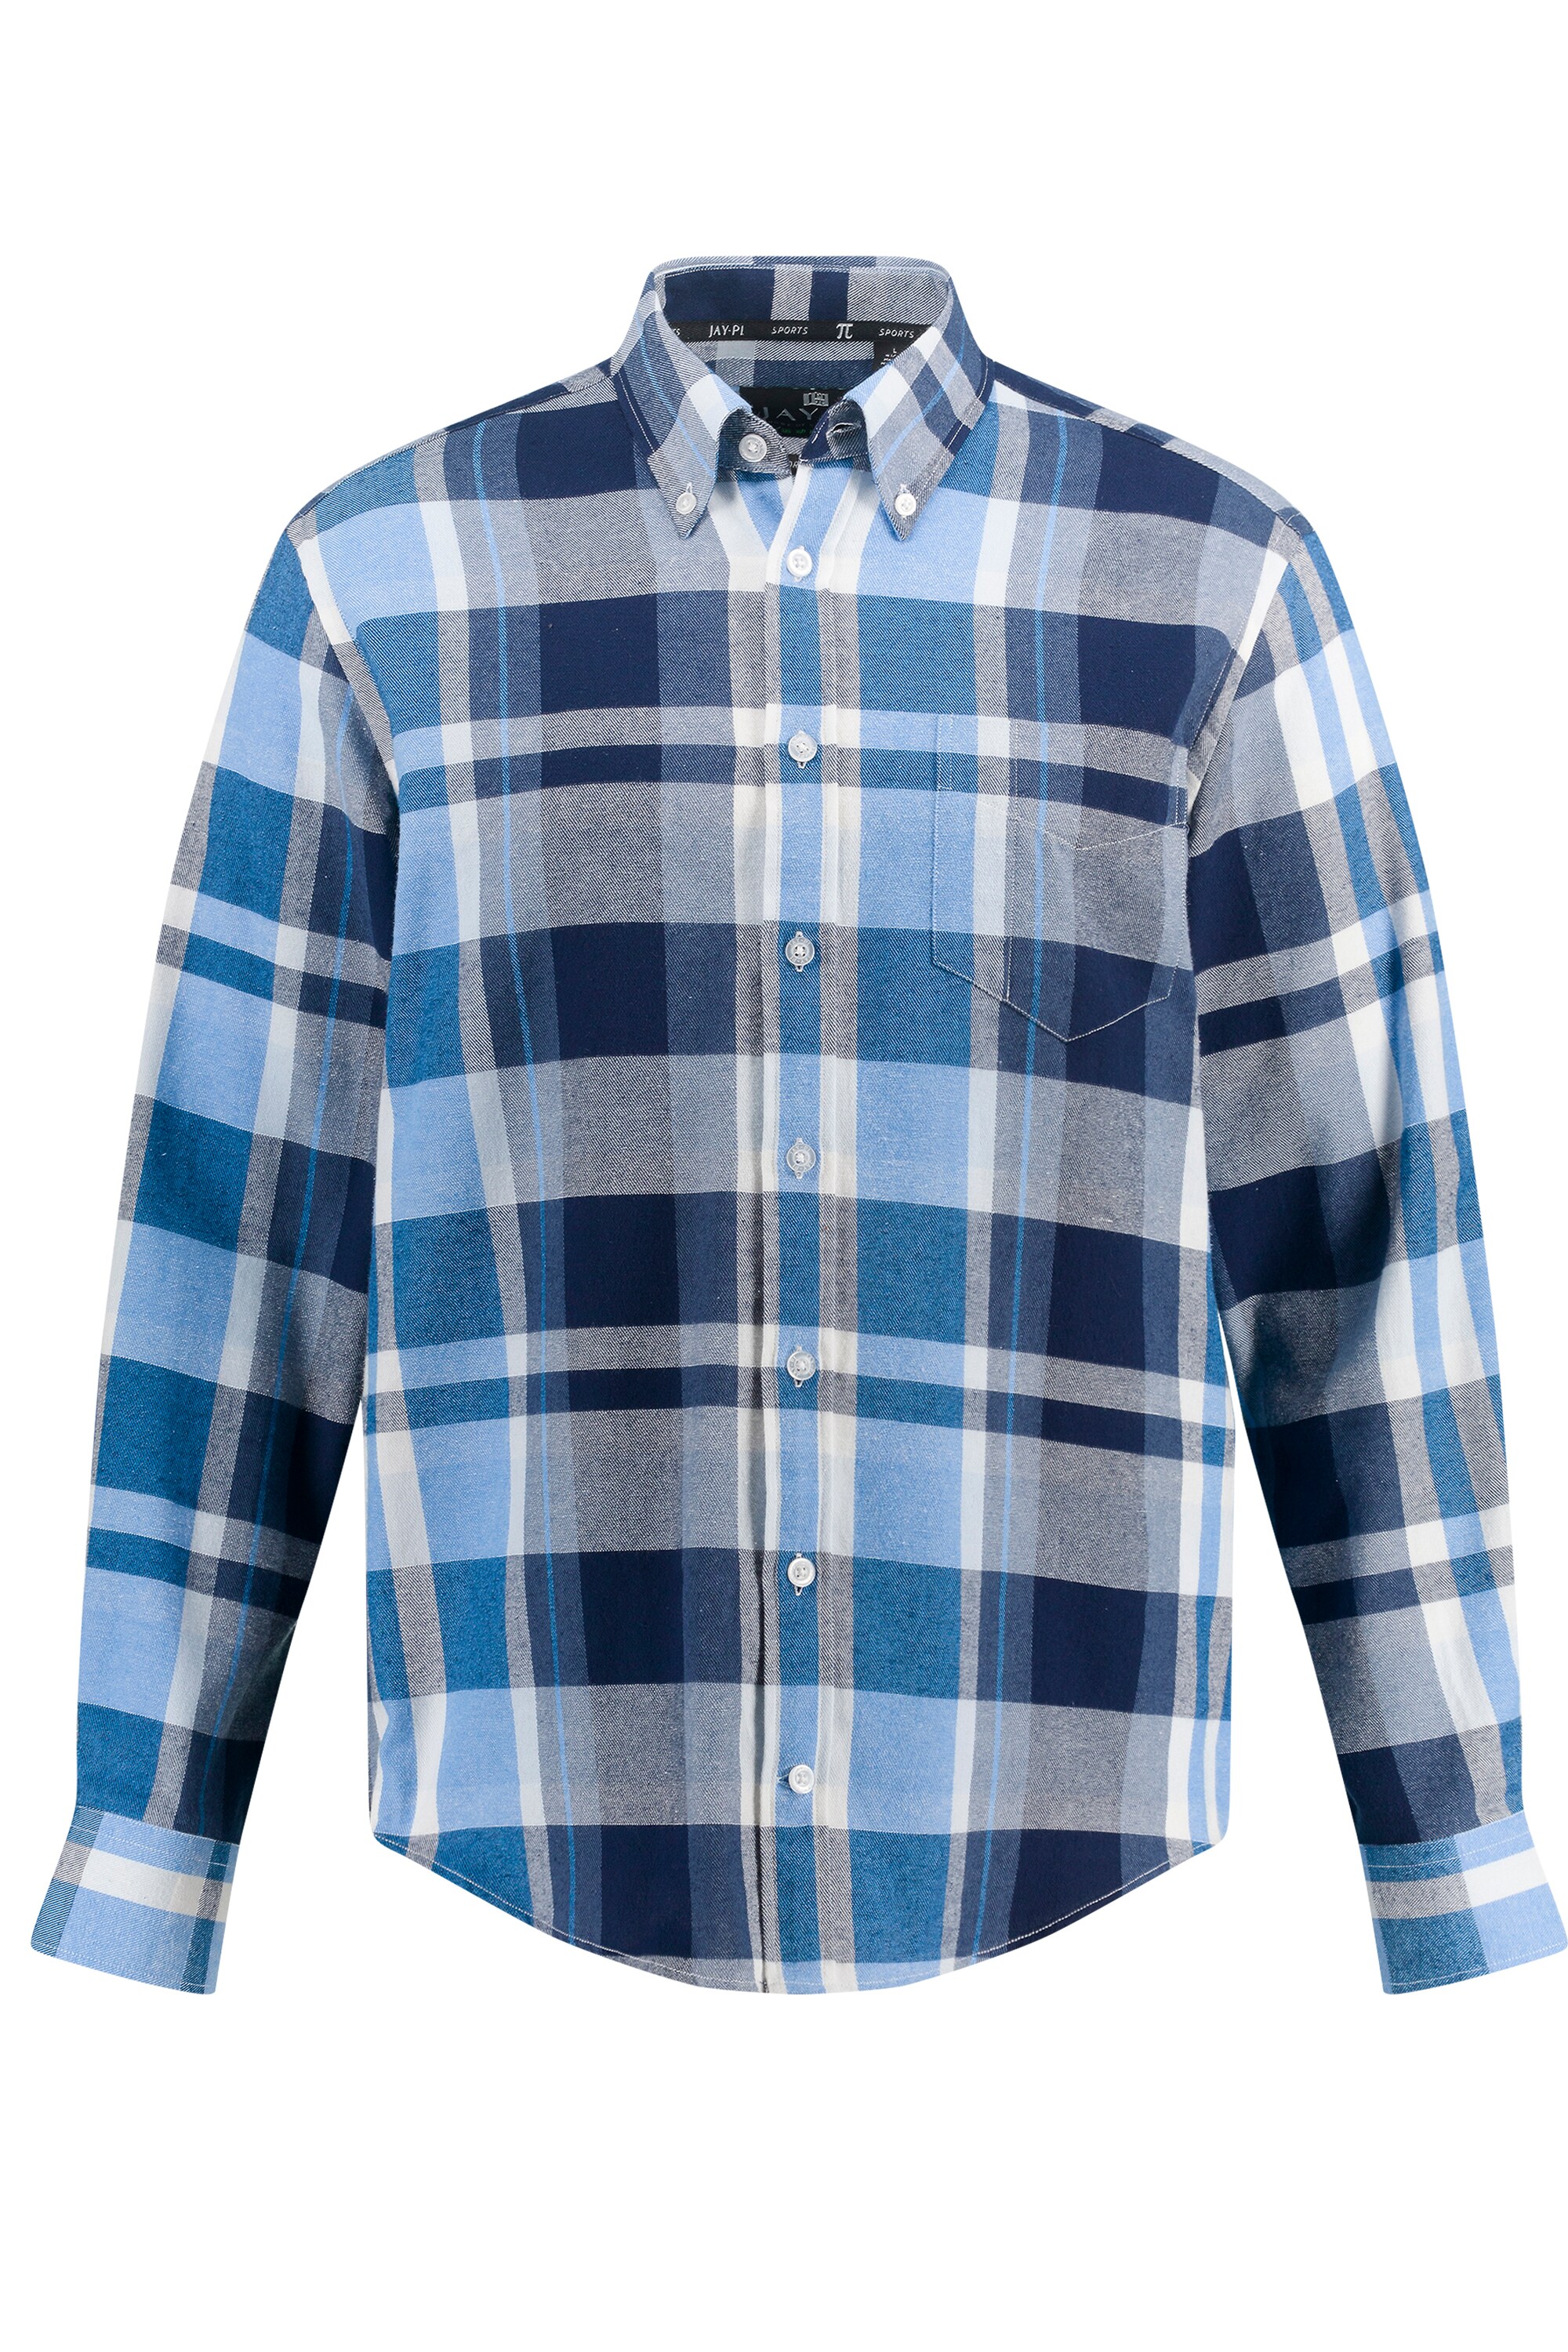 Рубашка JP1880, цвет mattes nachtblau